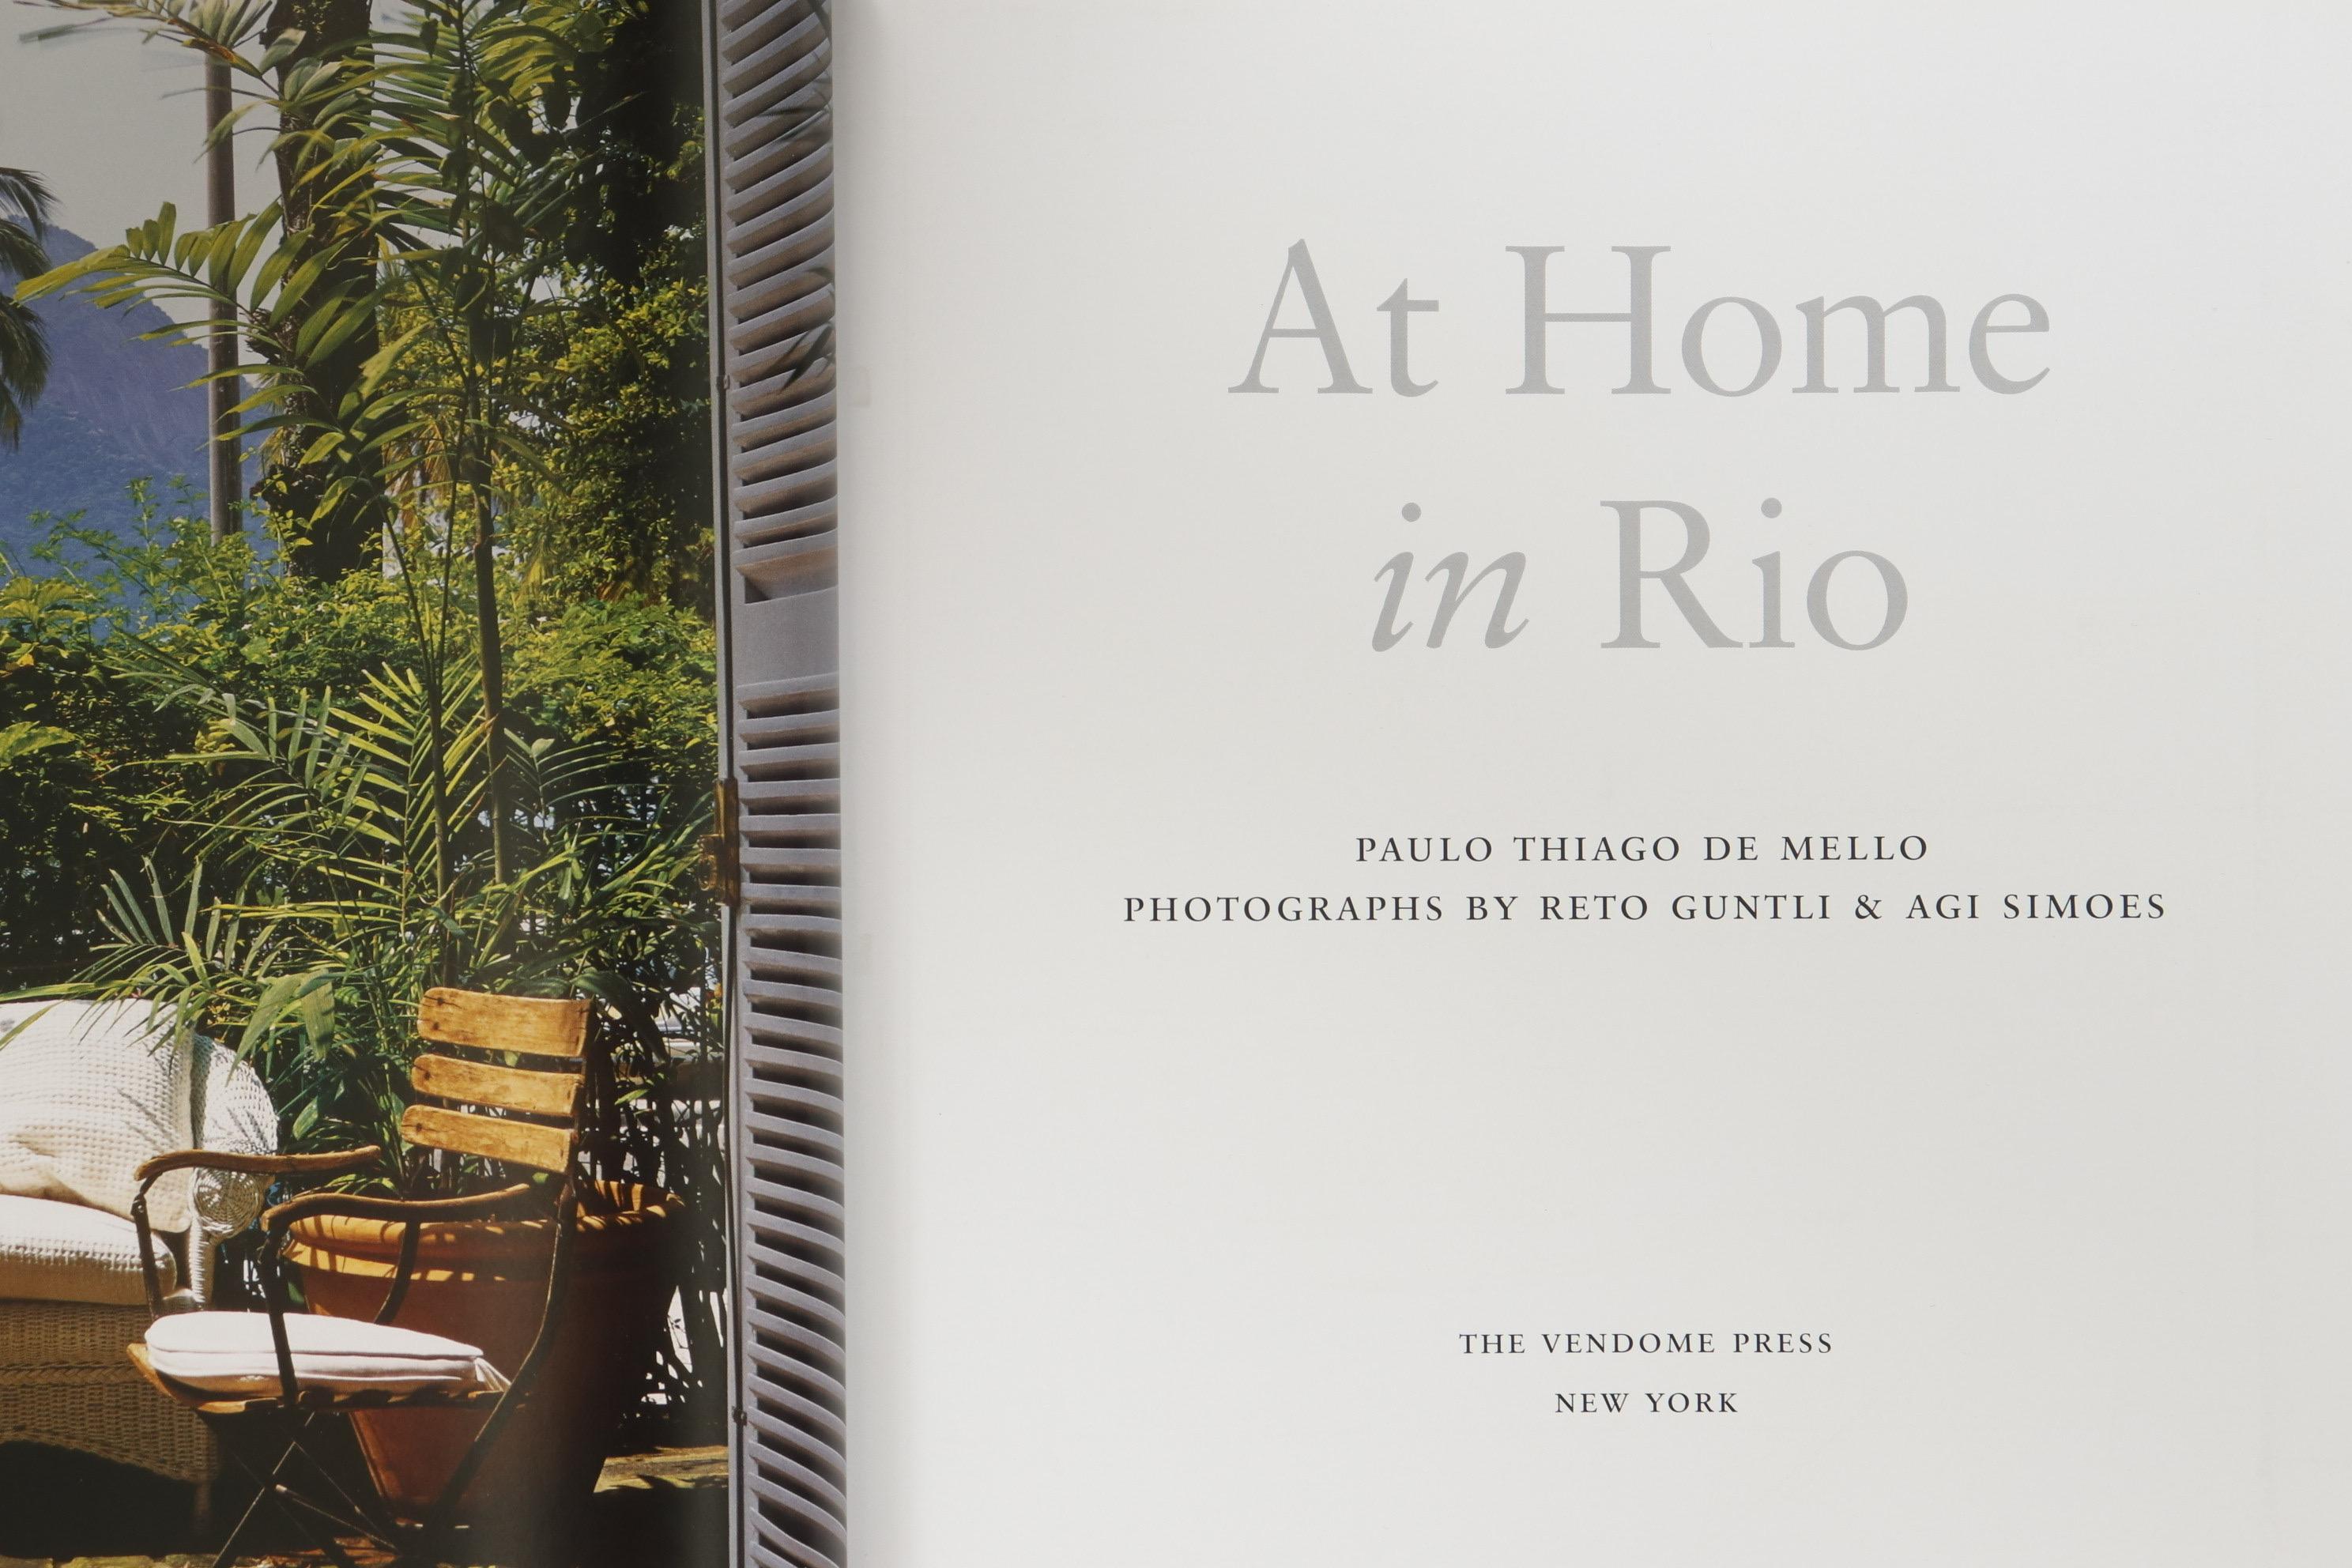 At Home in Rio de Paulo Thiago De Mello, photographies de Reto Guntli et Agi Simoes. Publié par The Vendome Press de New York en 2006. Imprimé en Espagne. Livre relié avec jaquette, première édition déclarée, 201 pages.
 